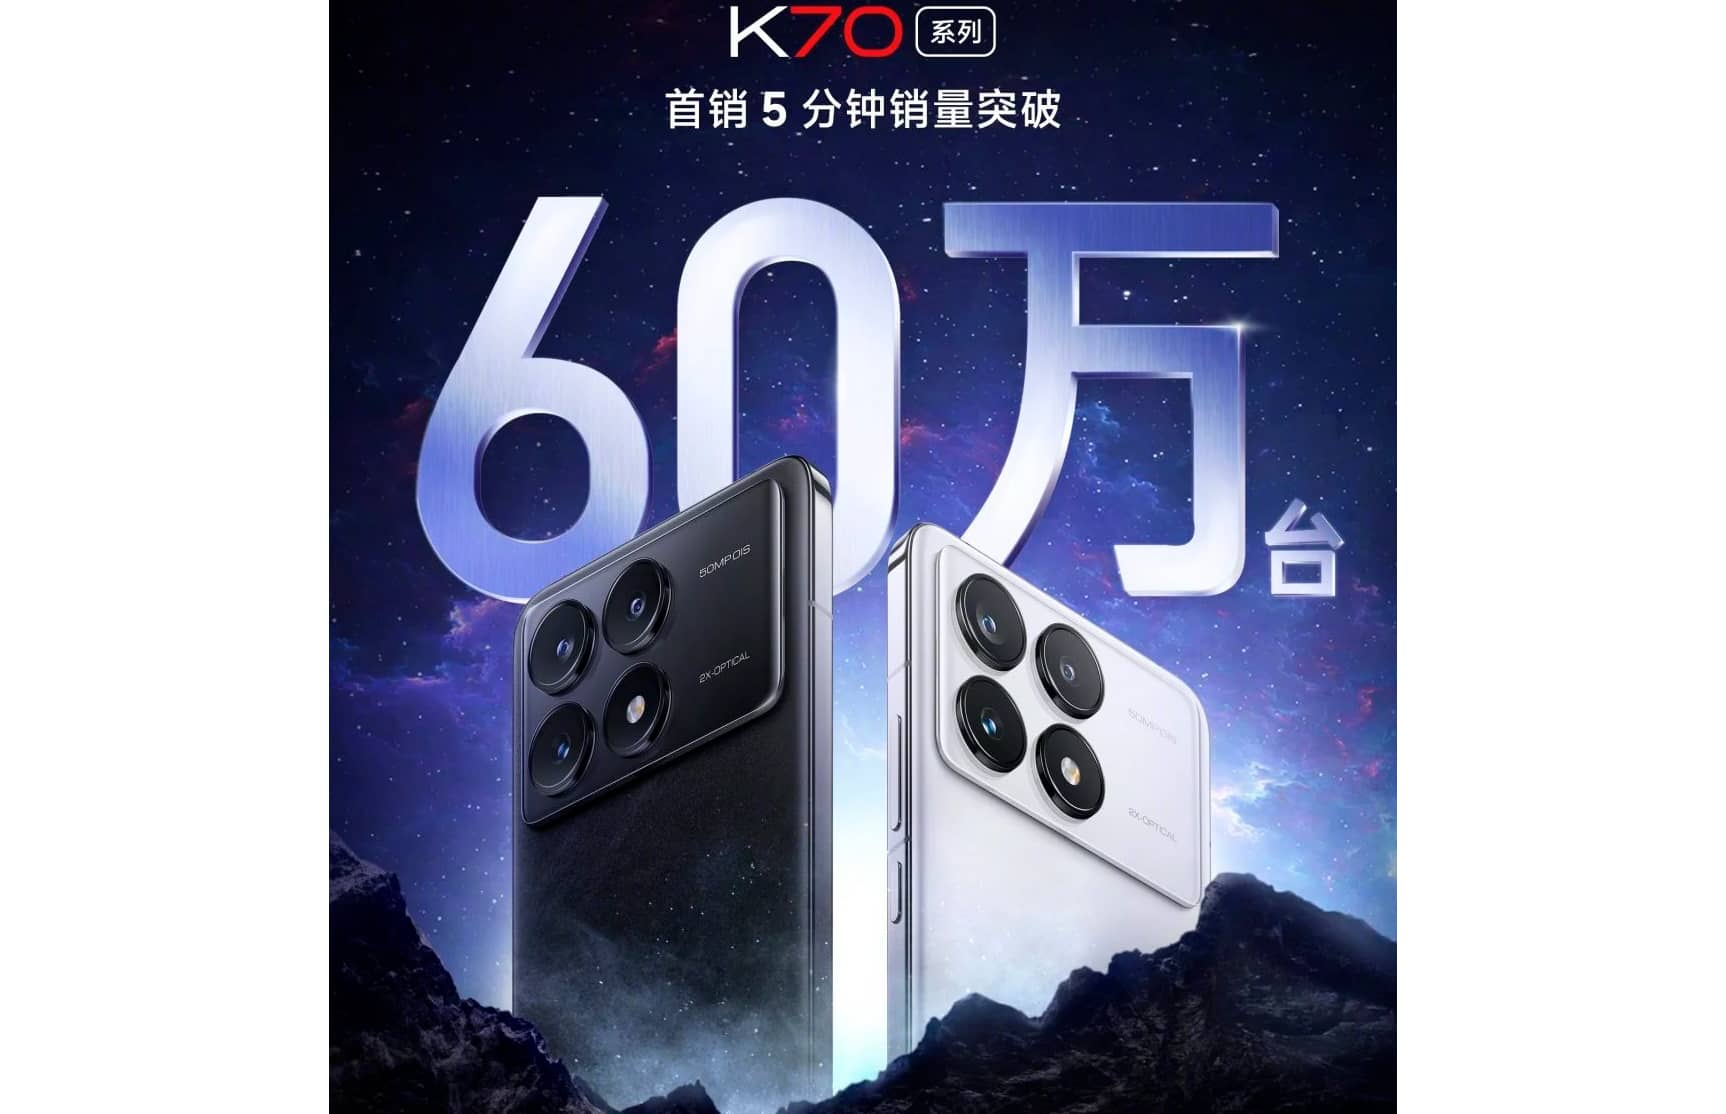 За 5 минут продано более 600 000 смартфонов серии Redmi K70